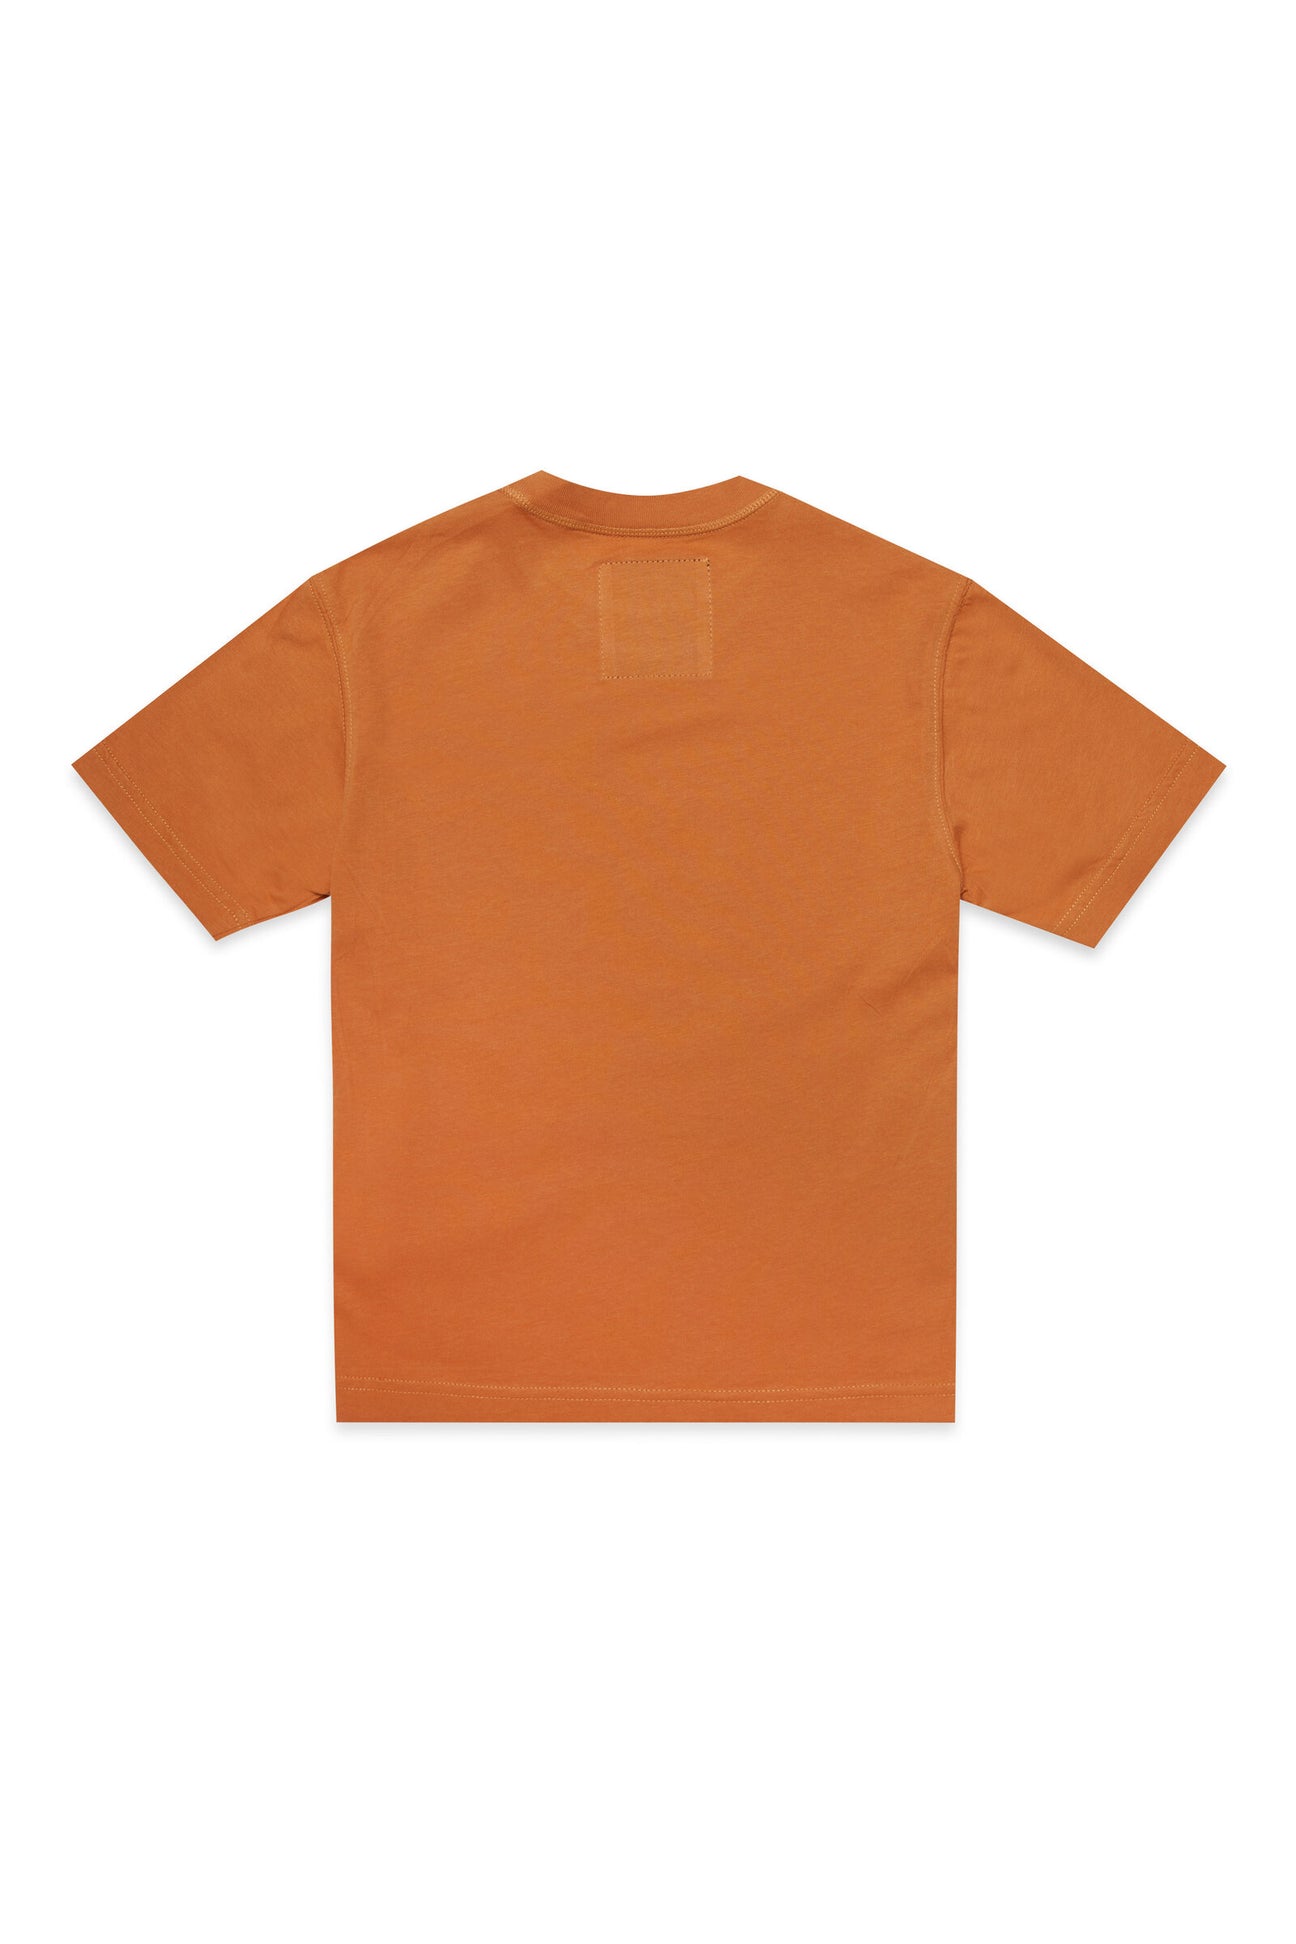 T-shirt girocollo in tessuto deadstock arancione con stampa digitale sul davanti T-shirt girocollo in tessuto deadstock arancione con stampa digitale sul davanti